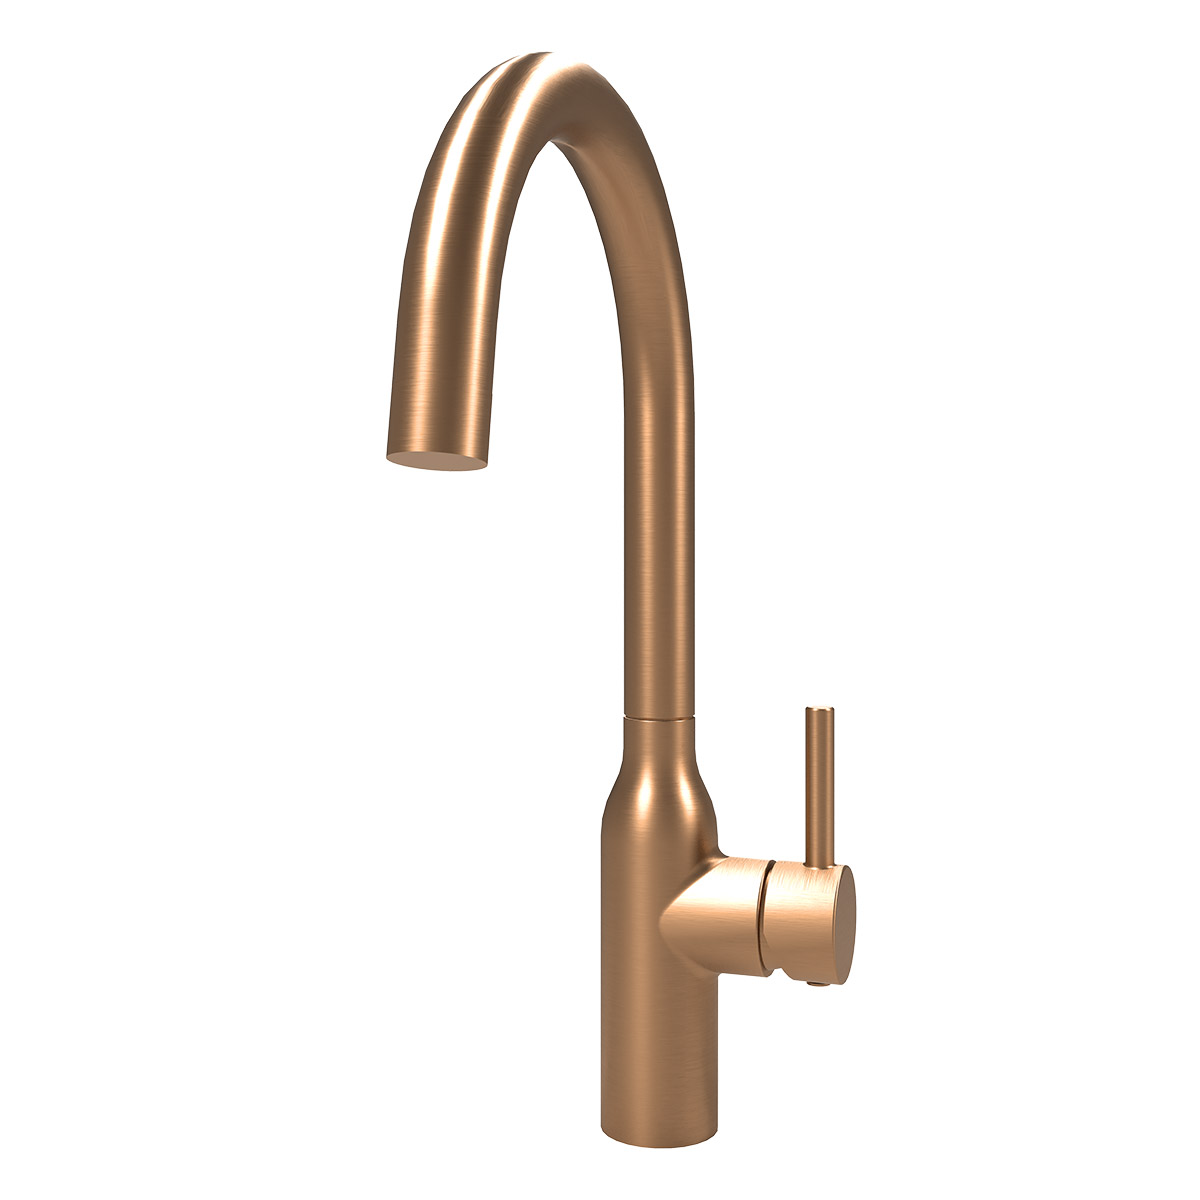 Eli single lever kitchen tap in copper